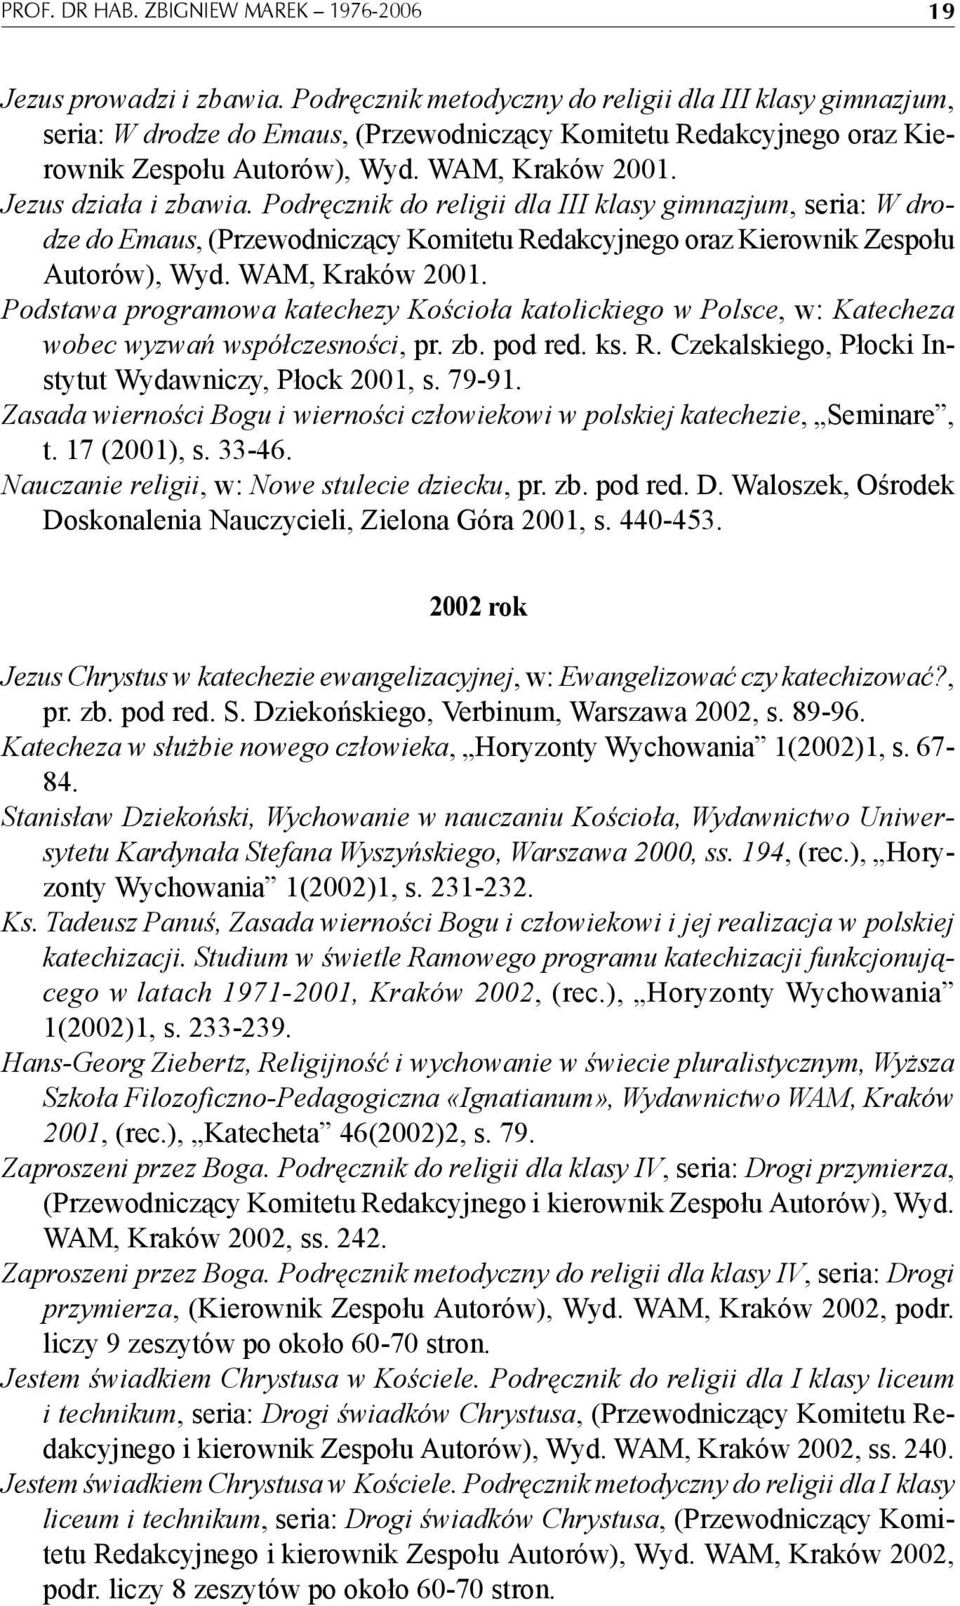 Podręcznik do religii dla III klasy gimnazjum, seria: W drodze do Emaus, (Przewodniczący Komitetu Redakcyjnego oraz Kierownik Zespołu Autorów), Wyd. WAM, Kraków 2001.